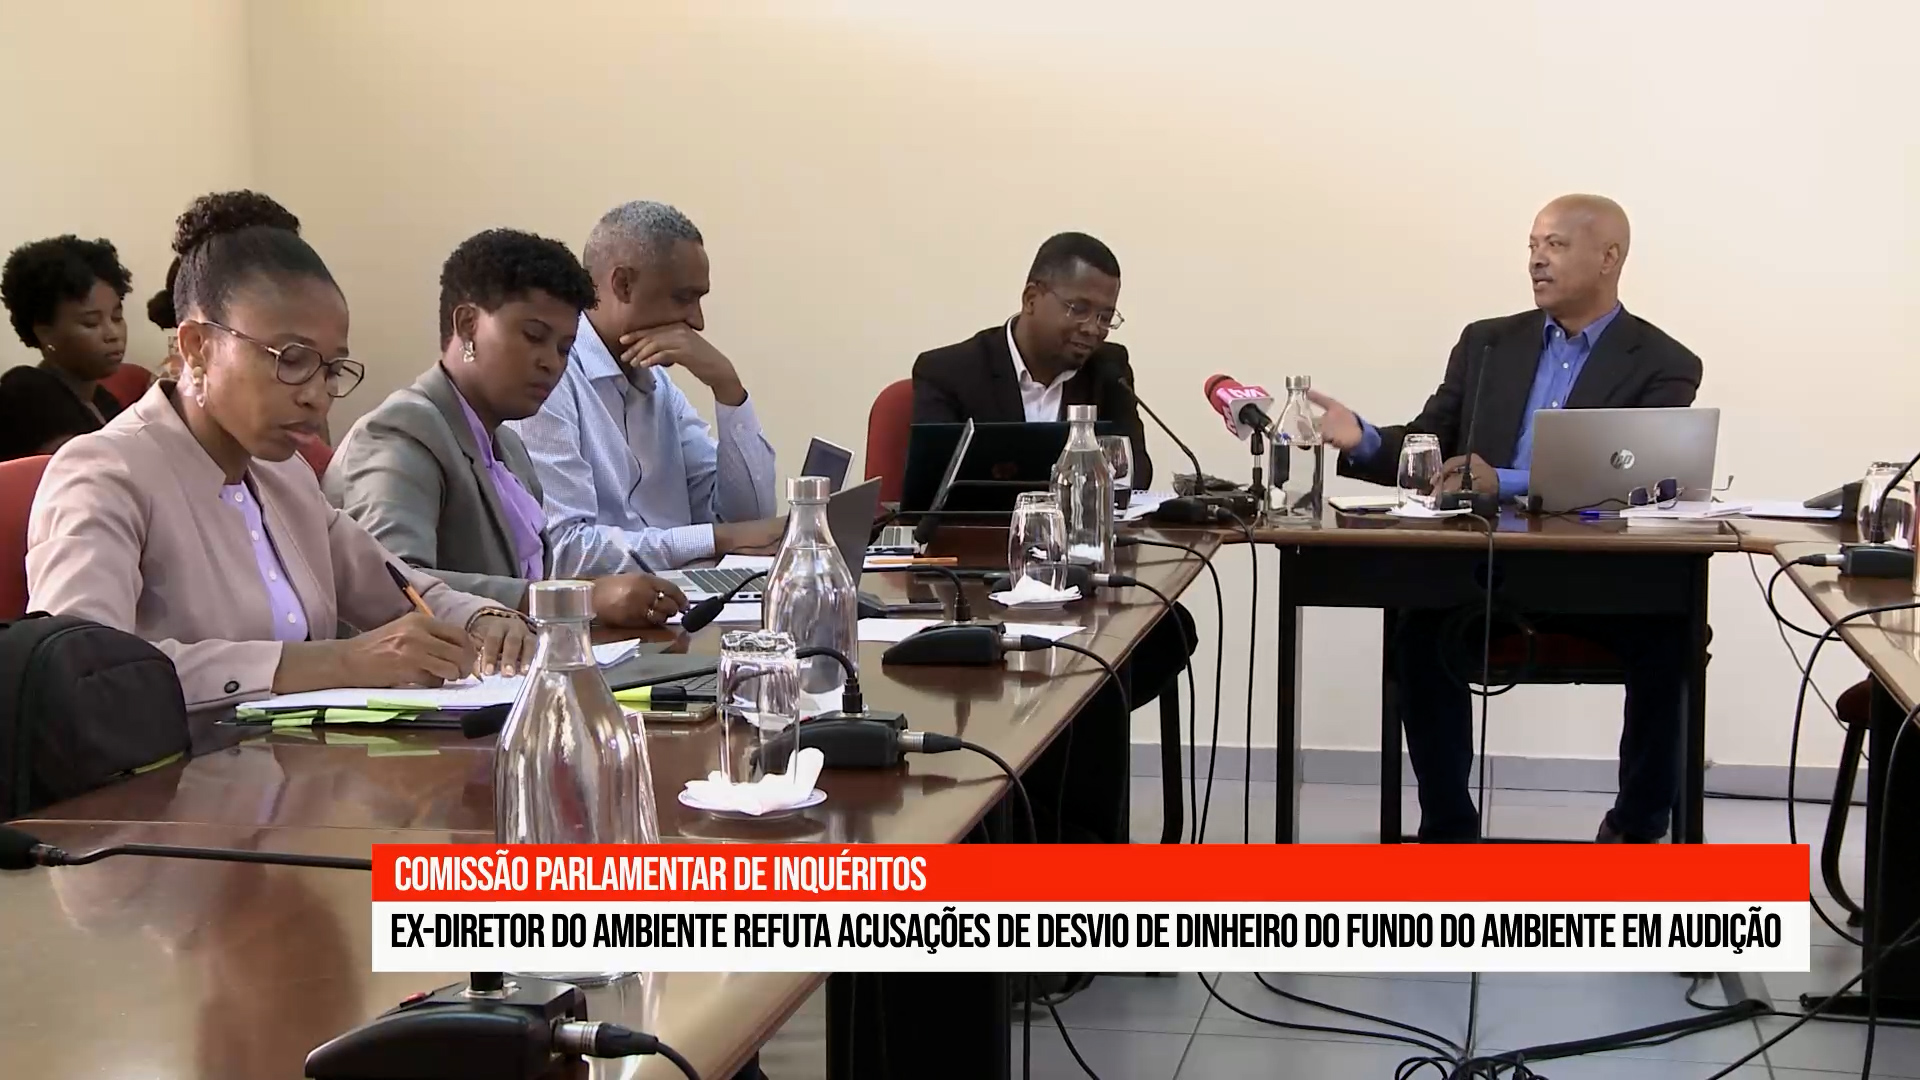 Ex Director Geral do Ambiente Moisés Borges nega desvio de fundos após audição parlamentar